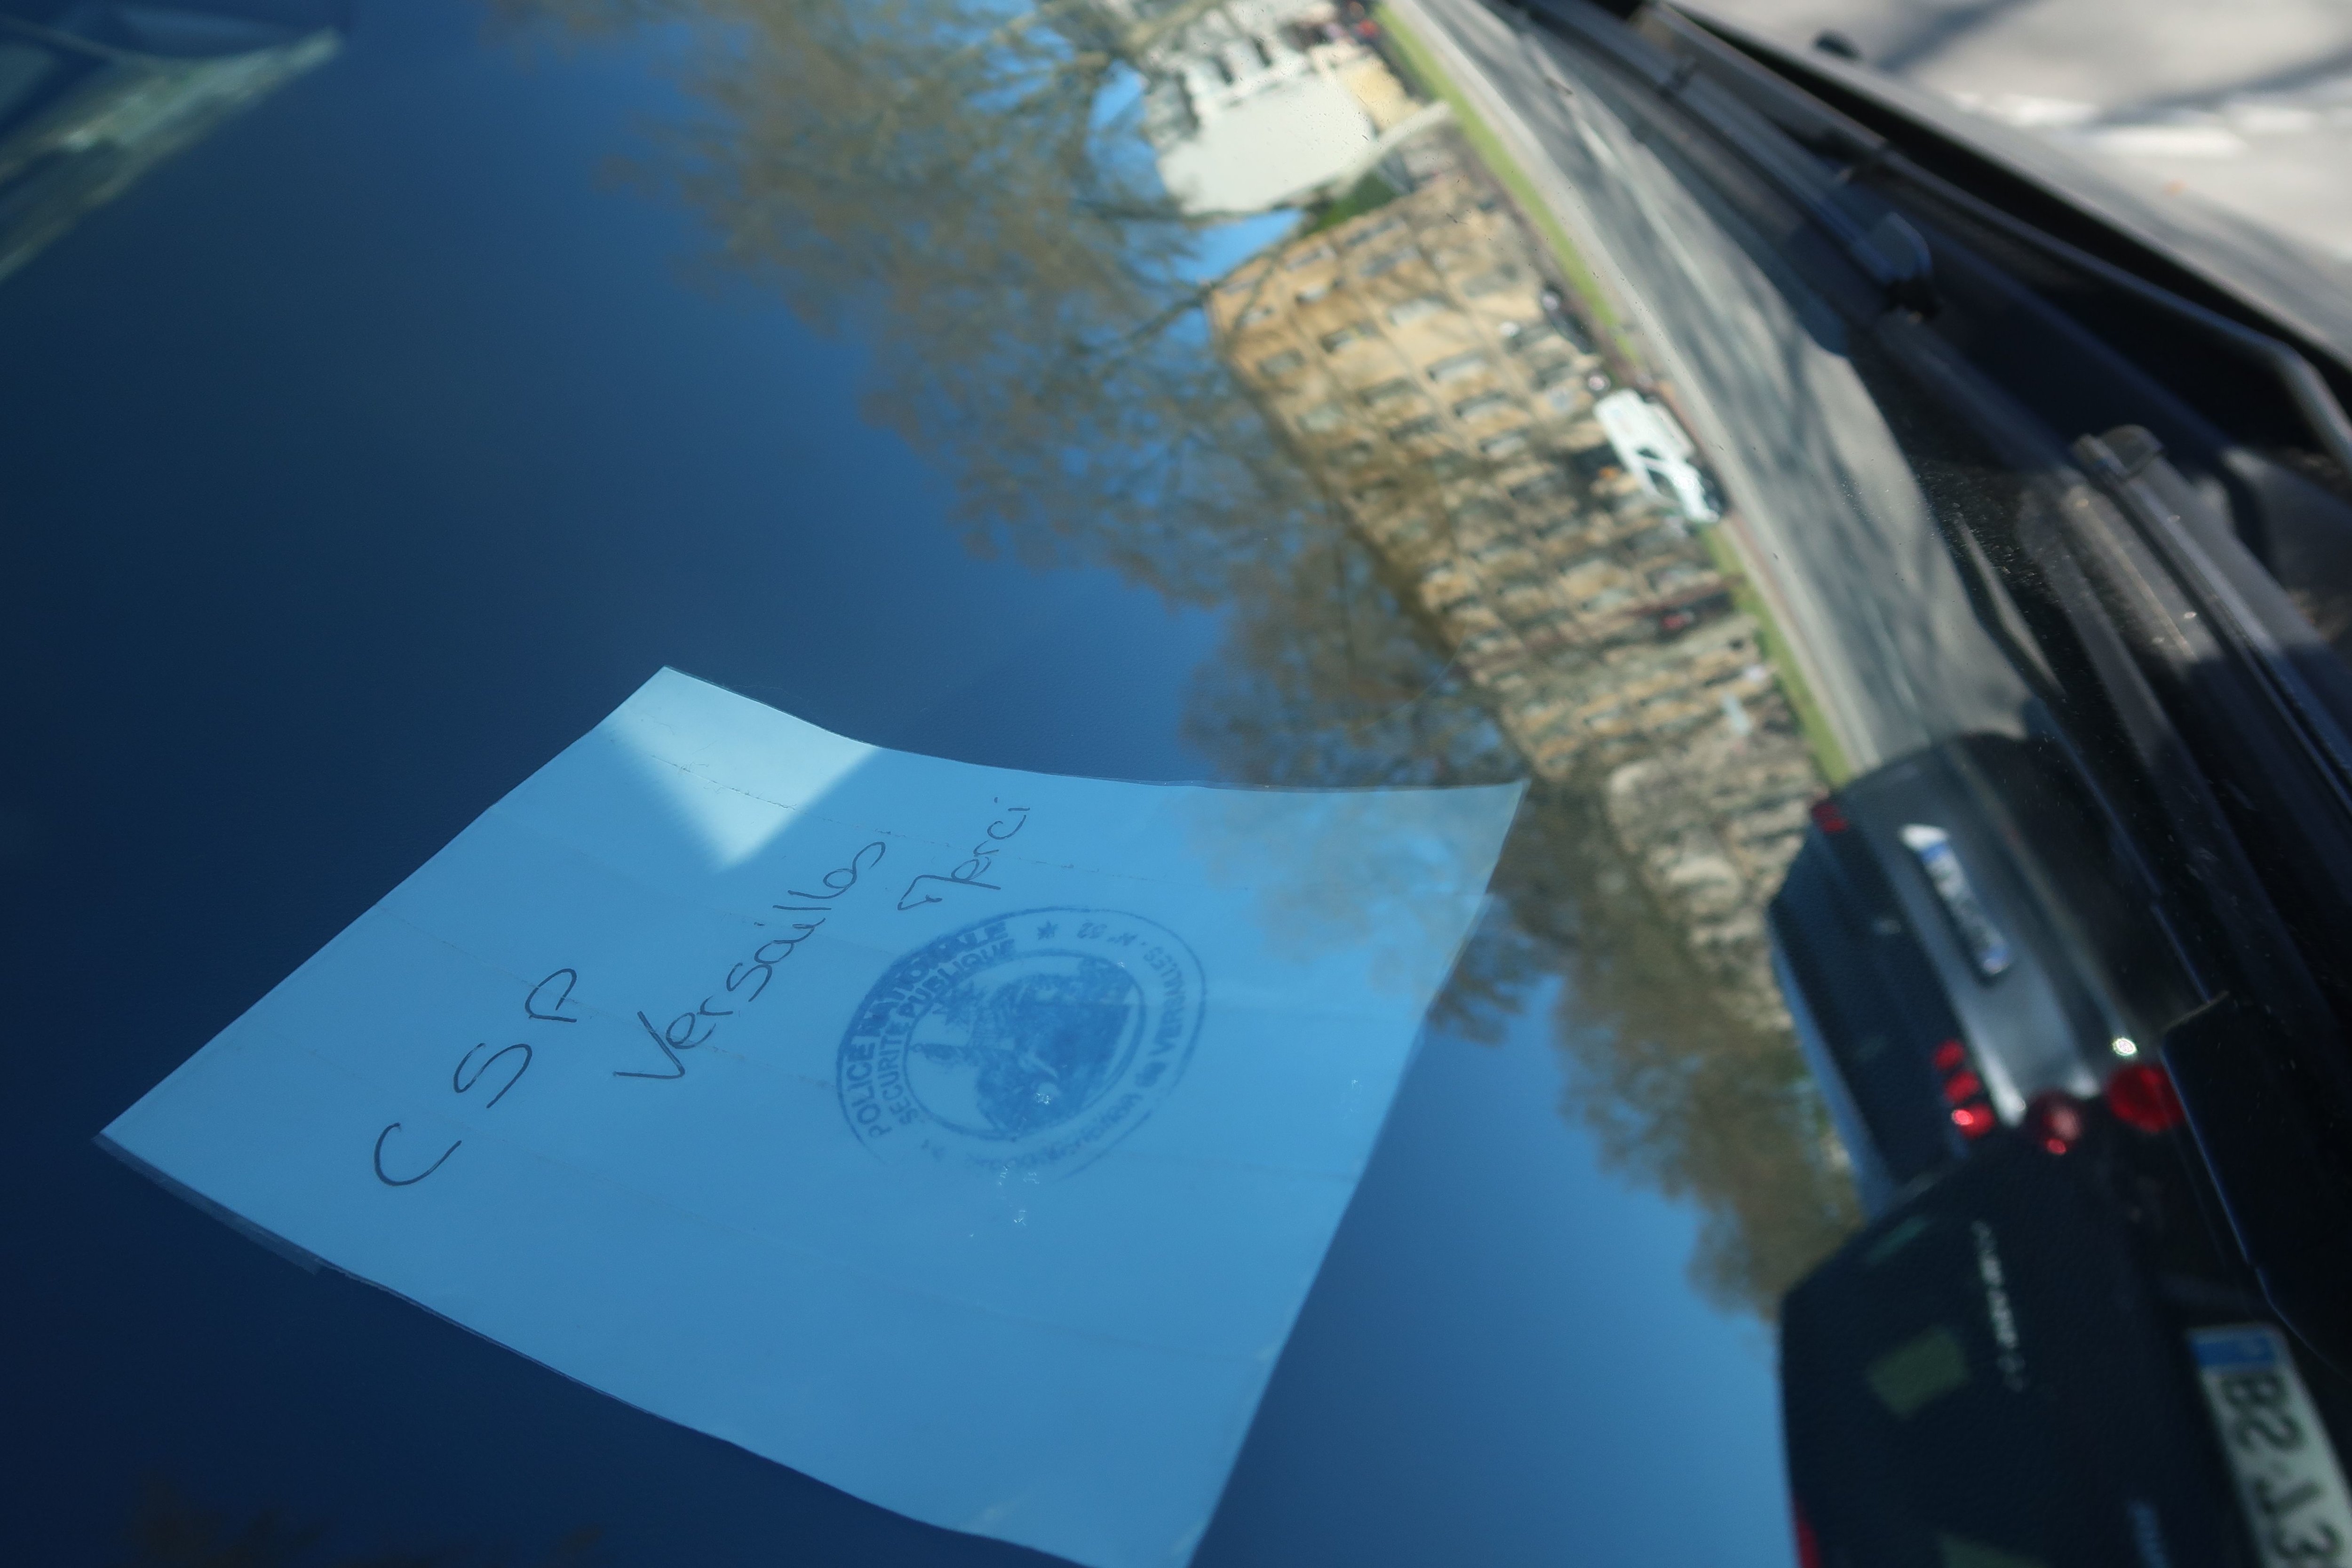 A Versailles, les policiers nationaux sont obligés de garer leur voiture sur l'avenue de Paris. Ils conviennent d'un code, comme un simple mot sur le pare-brise, pour que la police municipale ne les verbalise pas. LP/Mehdi Gherdane